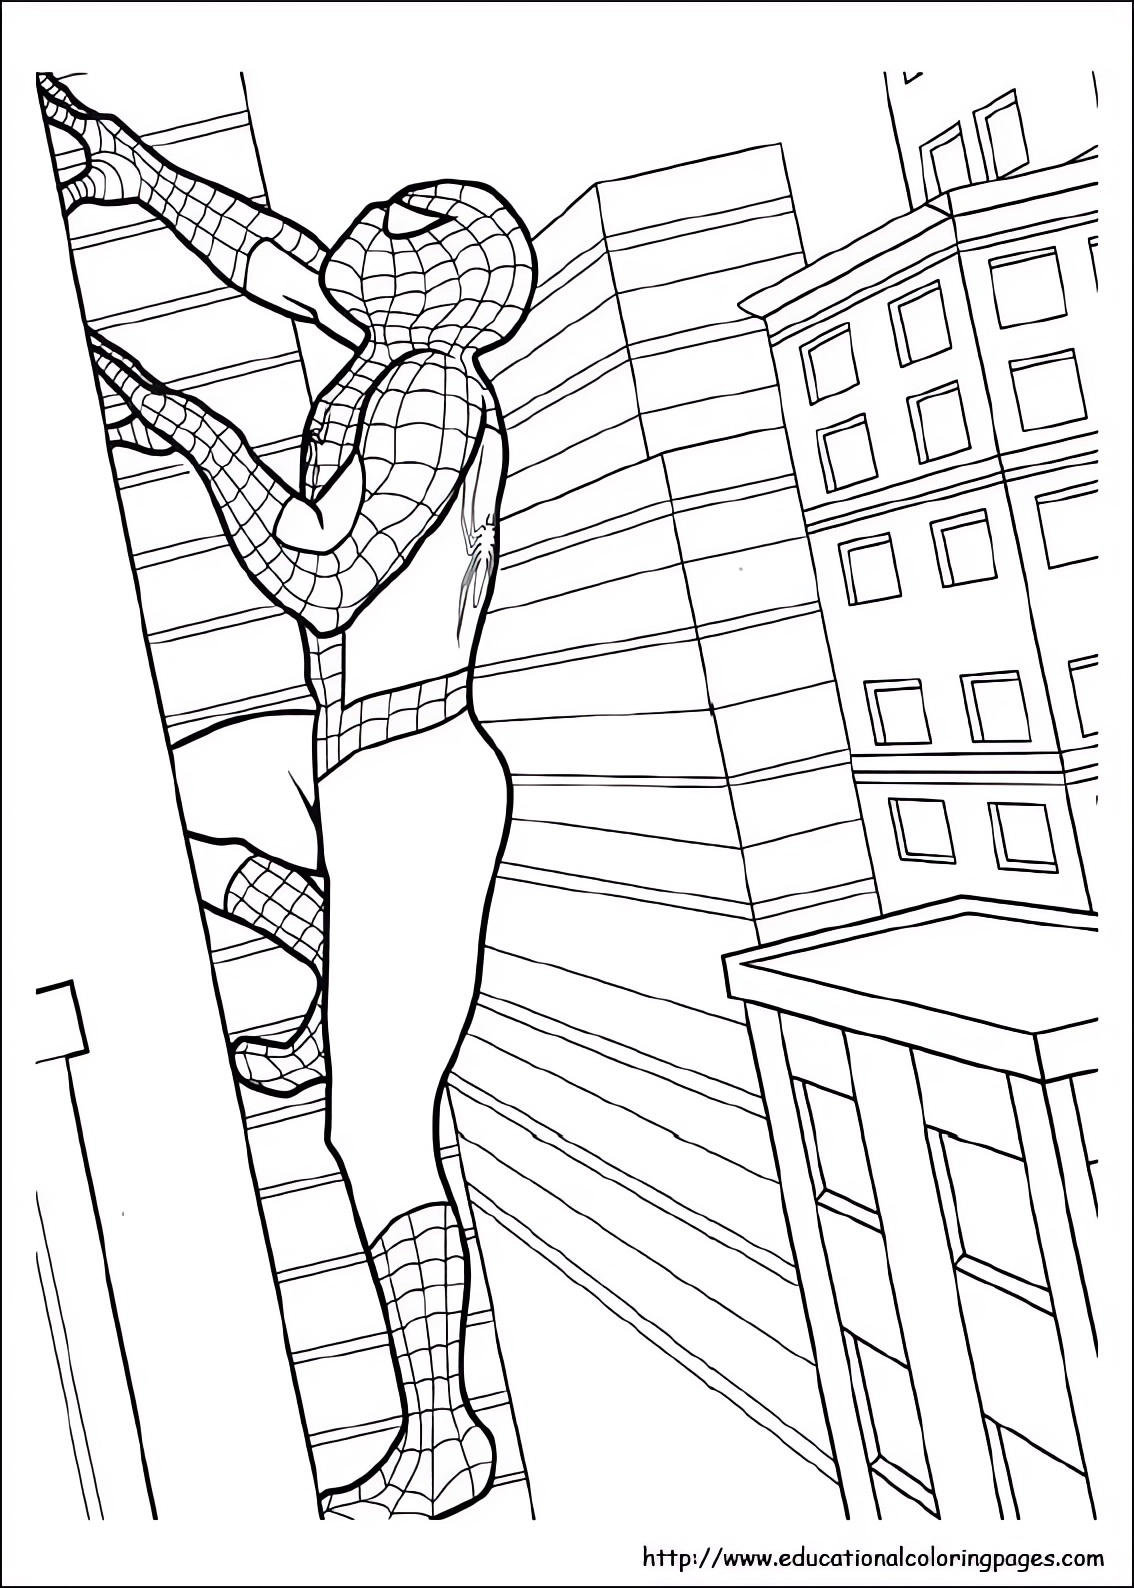 Disegno di Spiderman che si arrampica sulle pareti dei grattacieli da stampare e colorare 